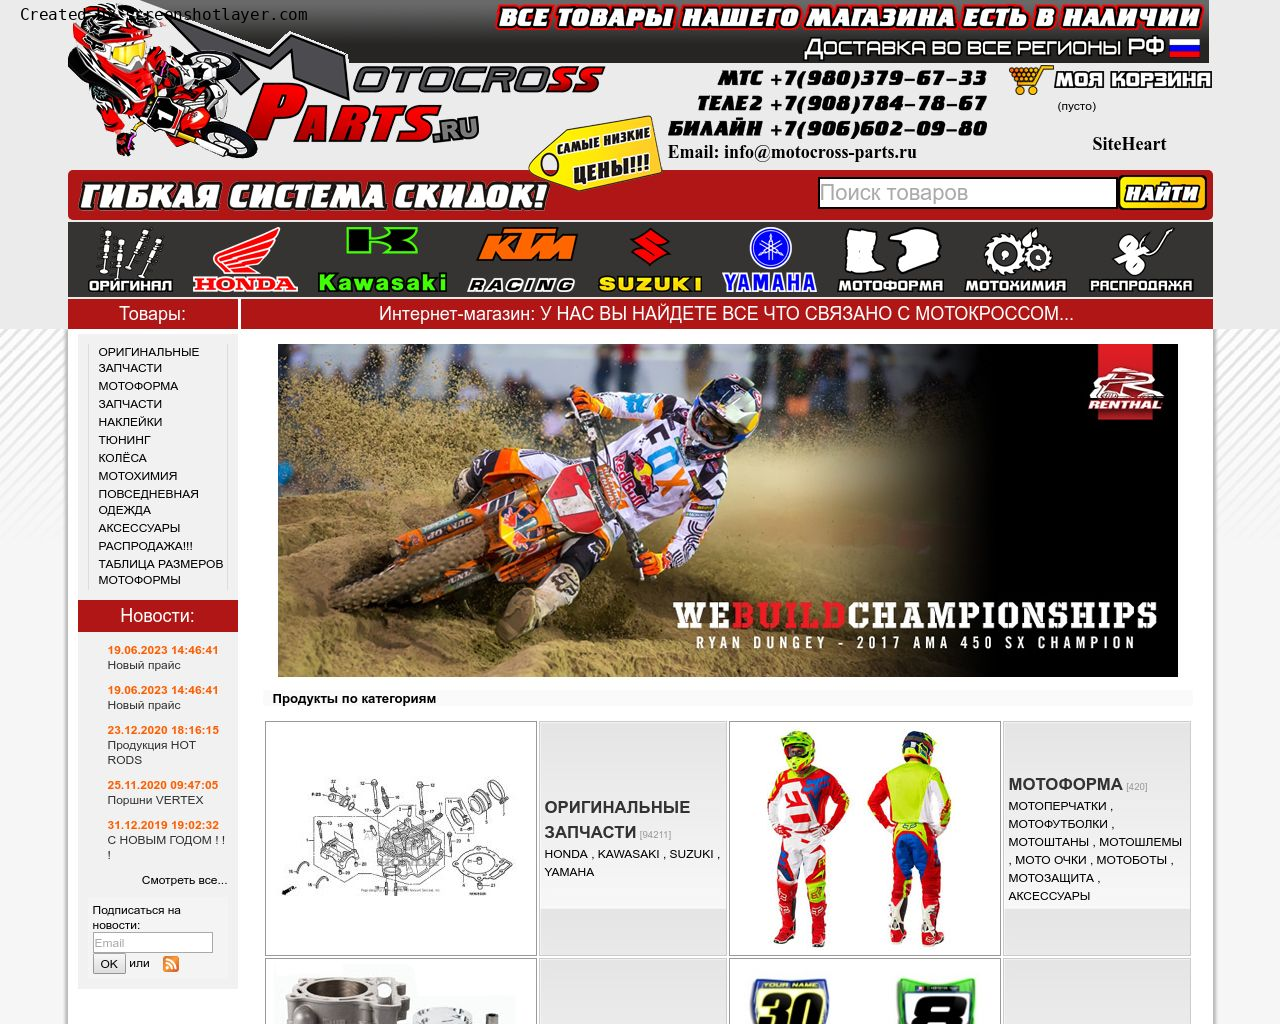 Изображение сайта motocross-parts.ru в разрешении 1280x1024